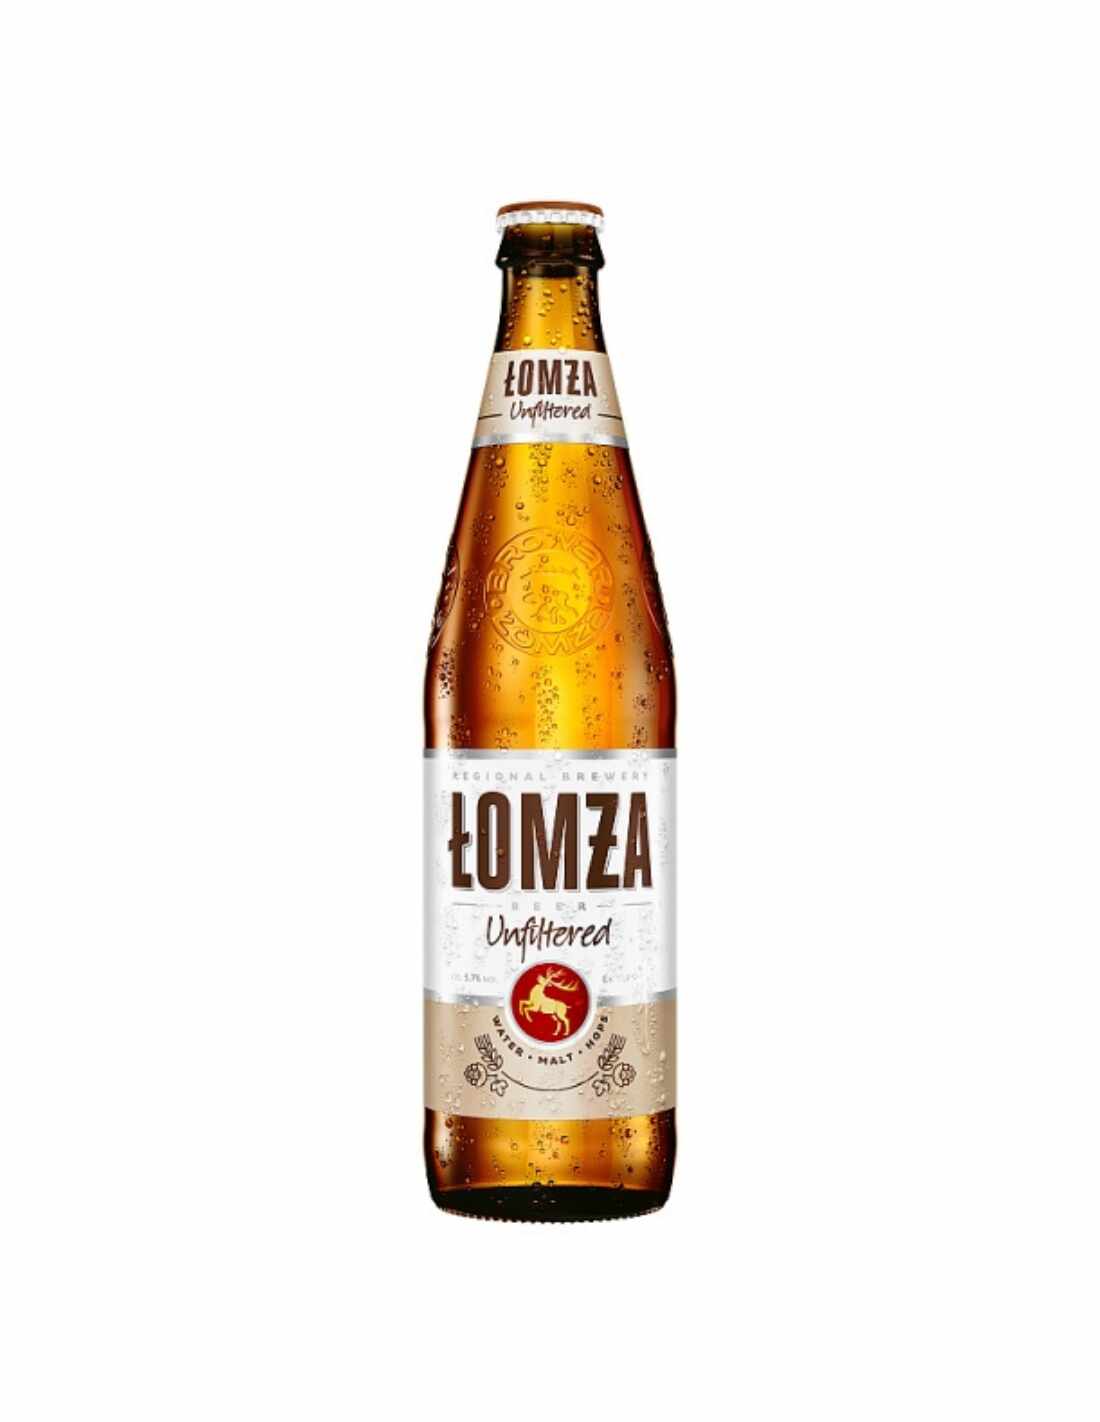 Bere blonda, nefiltrata Lomza, 5.7% alc., 0.5L, Polonia